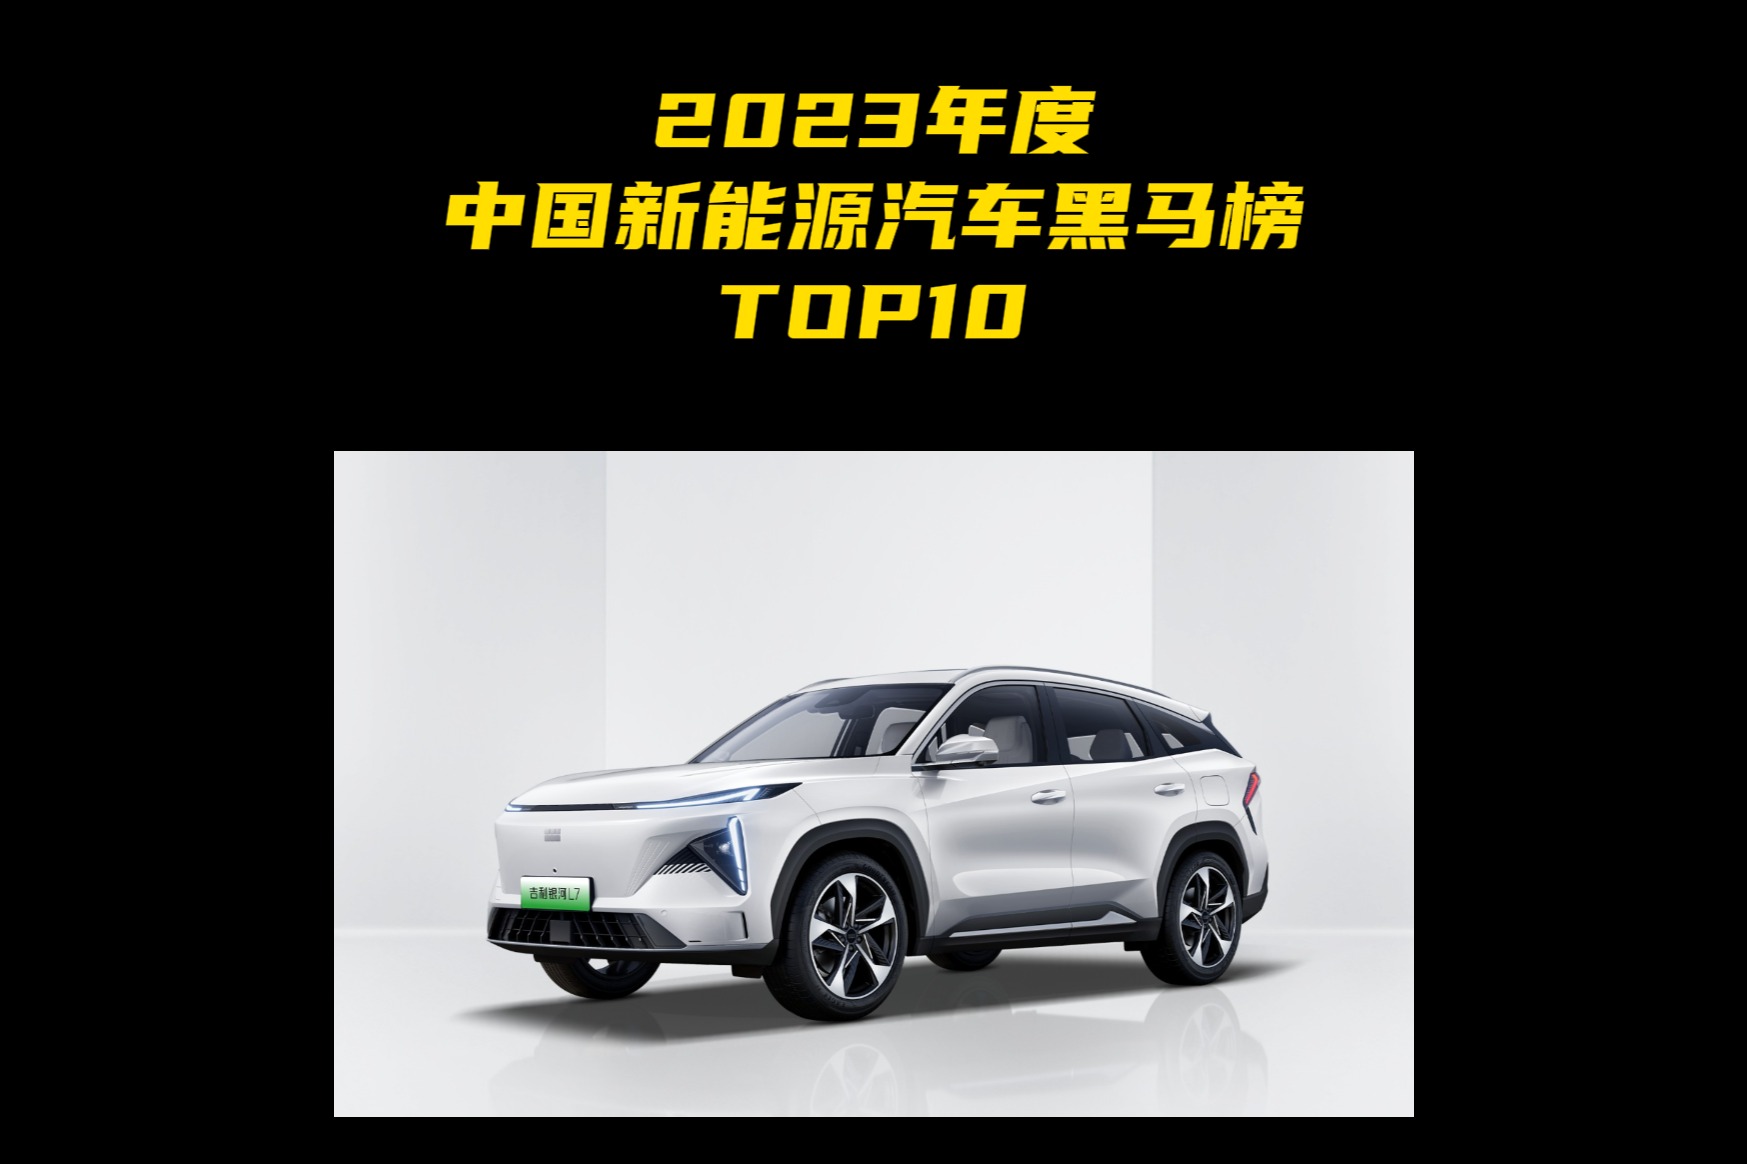 2023年度中国新能源汽车黑马榜TOP10 第六名：小鹏G6